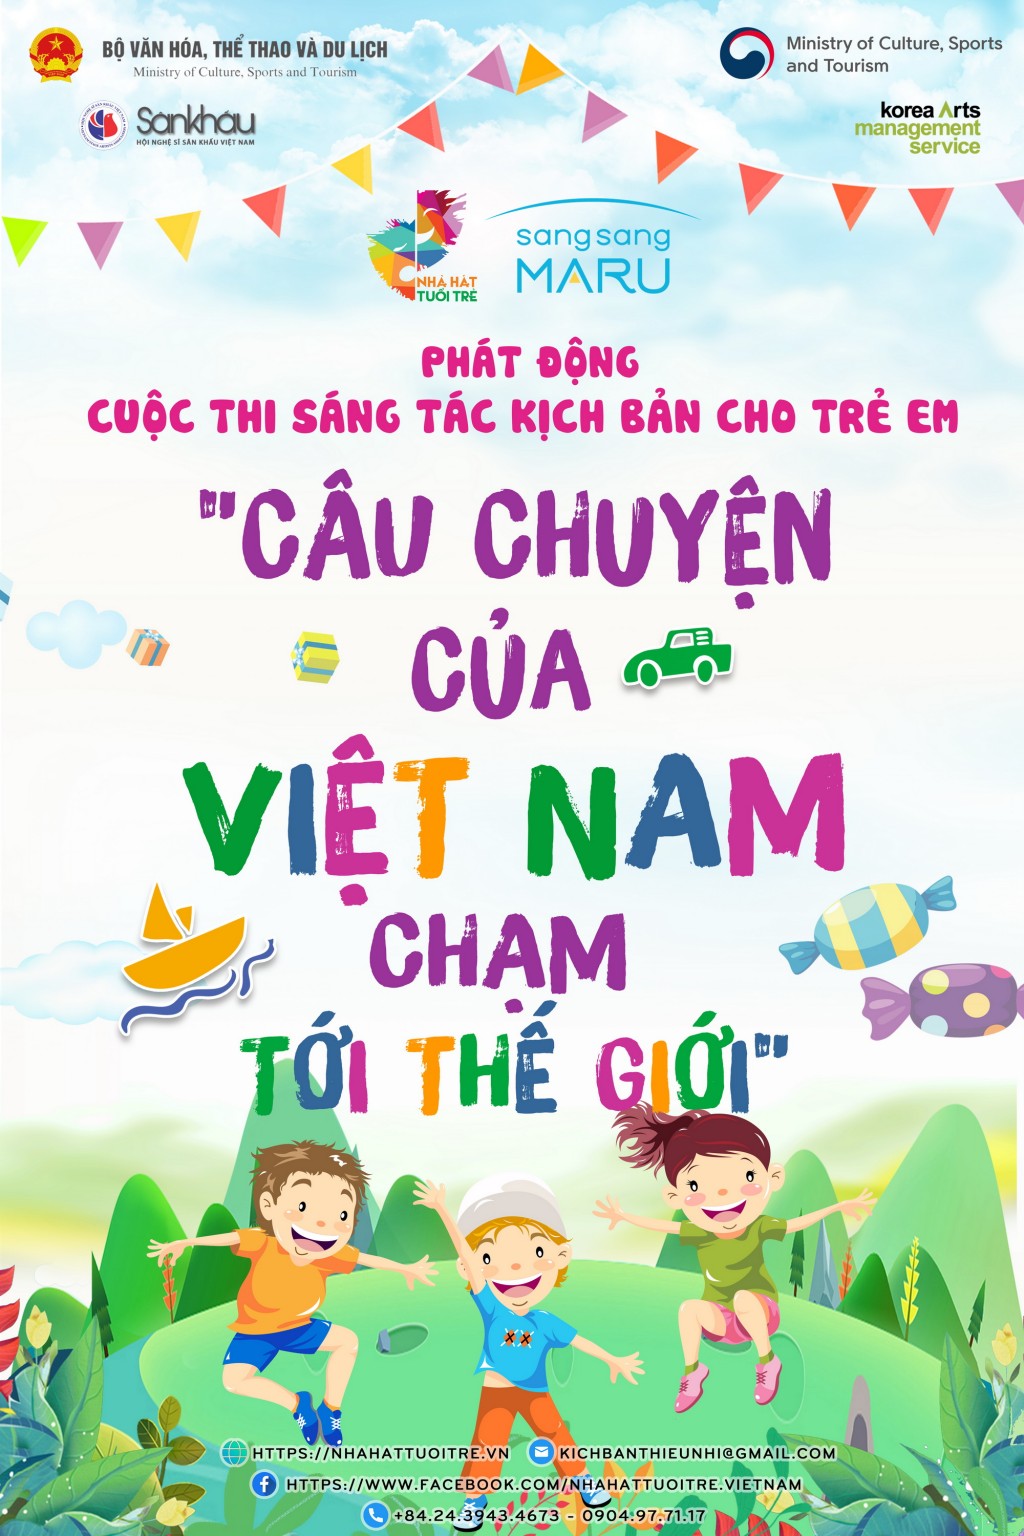 “Cuộc thi sáng tác kịch bản cho trẻ em tại Việt Nam” với chủ đề “Câu chuyện của Việt Nam chạm tới thế giới”